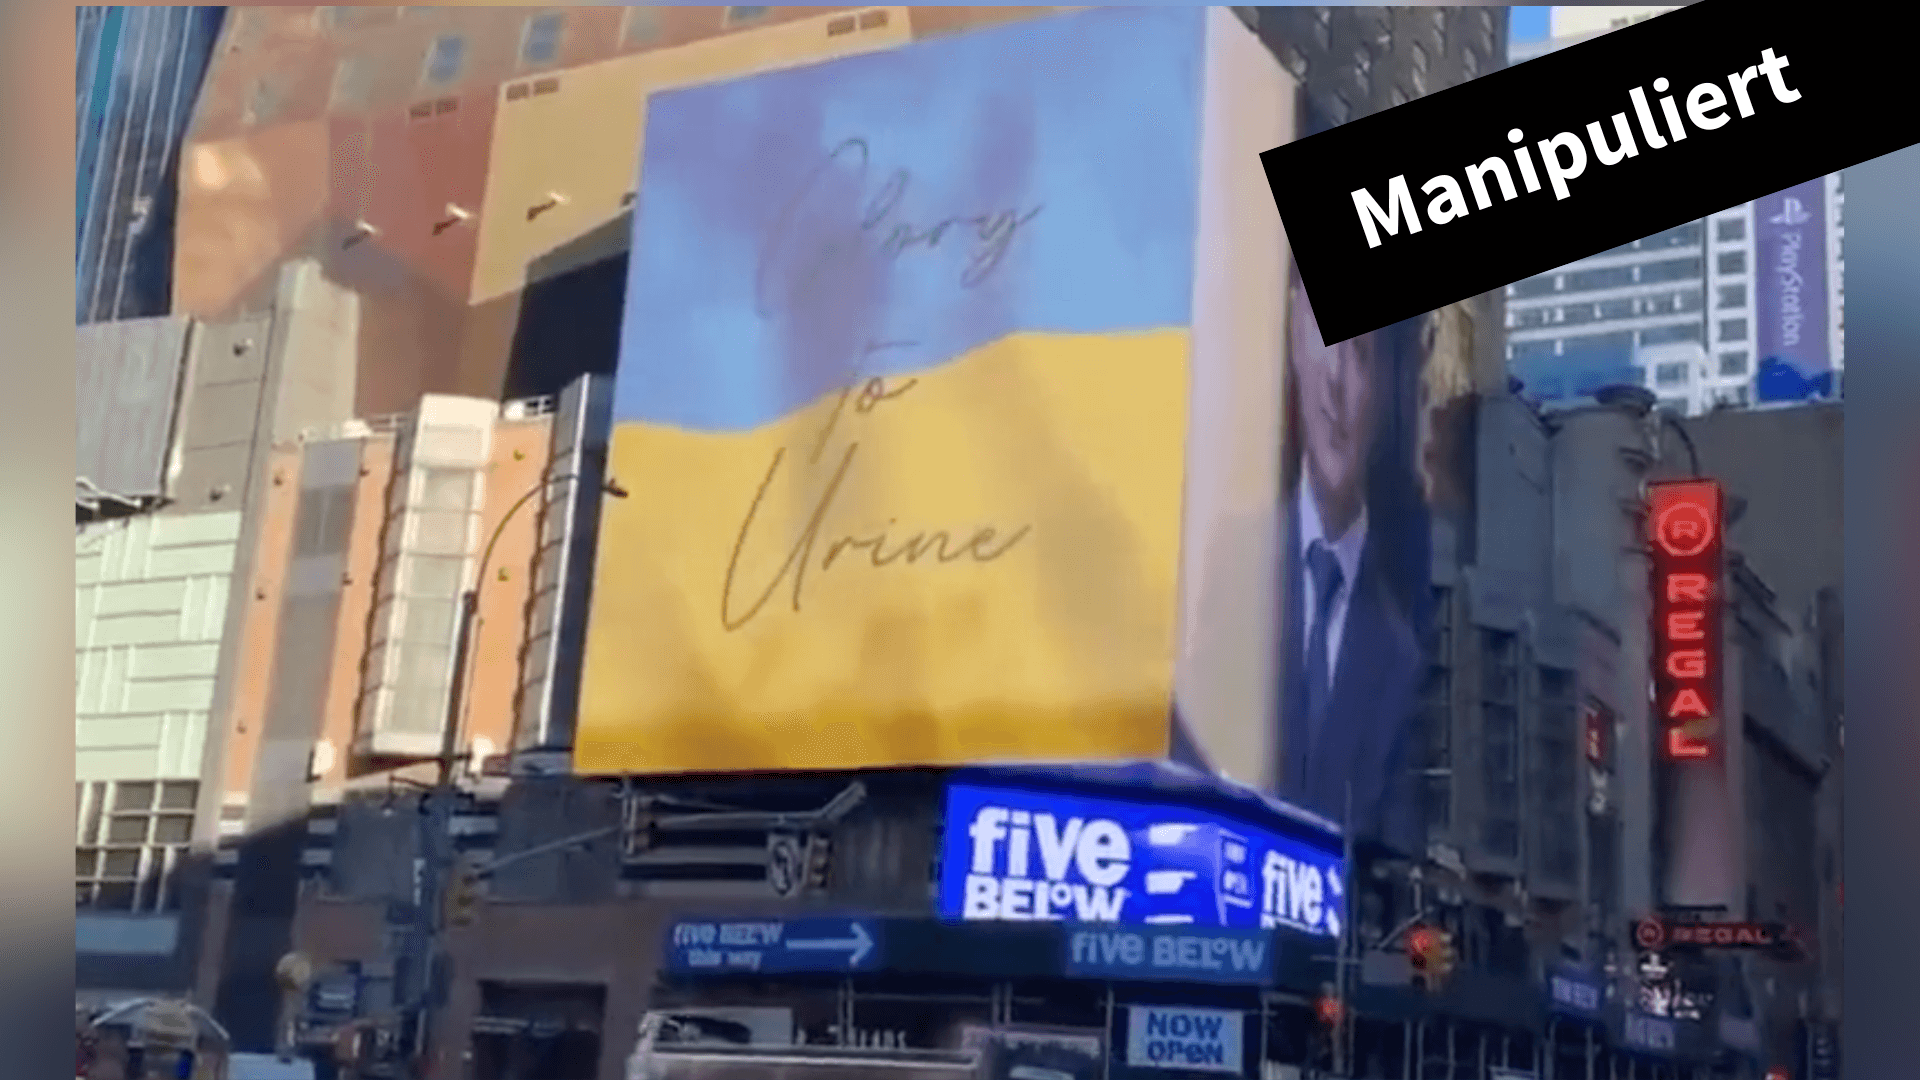 In Sozialen Netzwerken verbreitet sich ein gefälschtes Video einer Werbetafel in New York